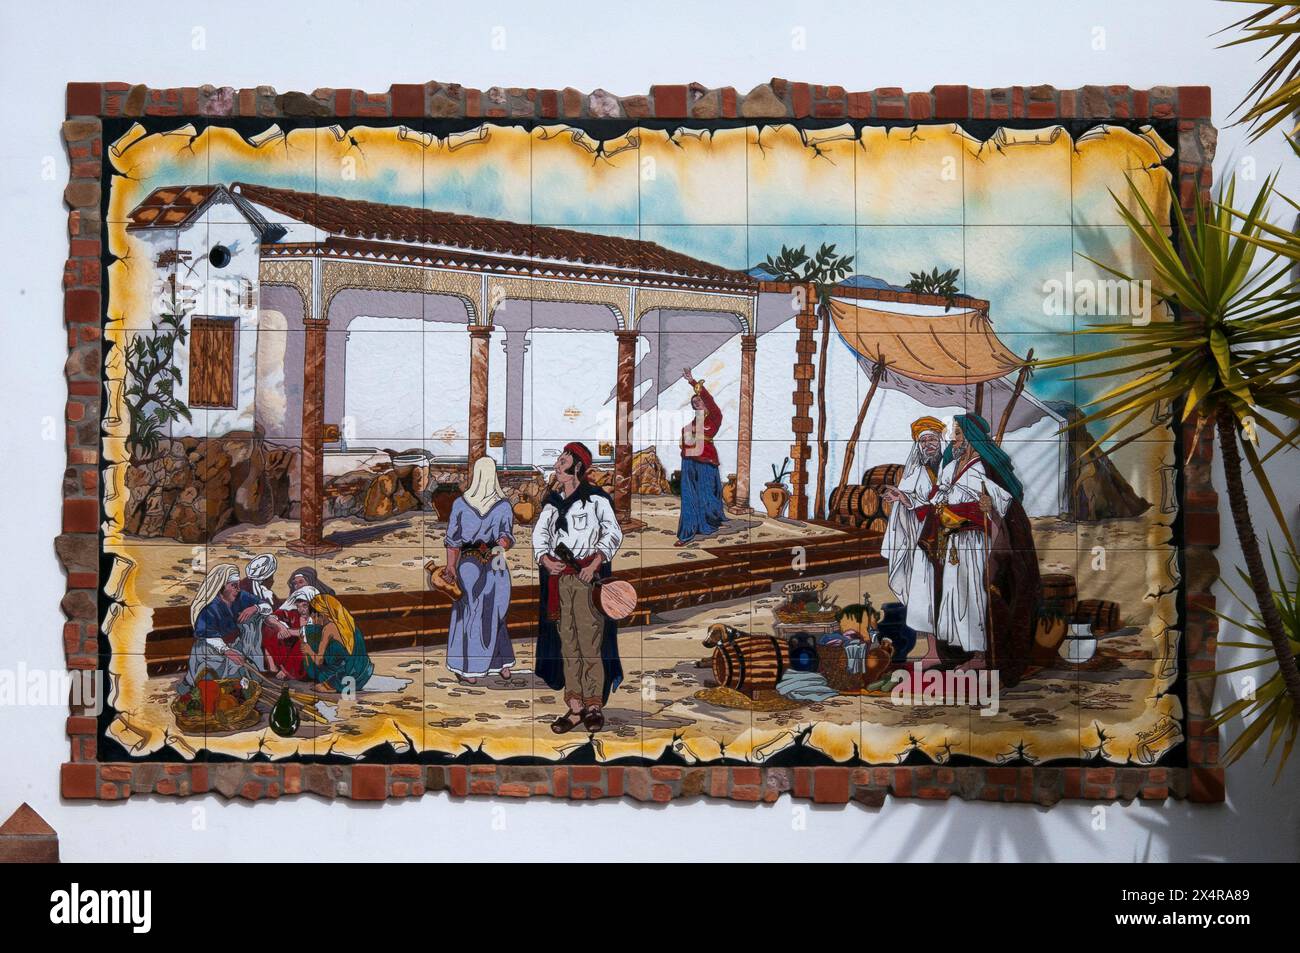 Azulejo décoratif ou carrelage émaillé illustre l'histoire et le patrimoine du 'Village Blanc' de Competa, Andalousie, Espagne Banque D'Images